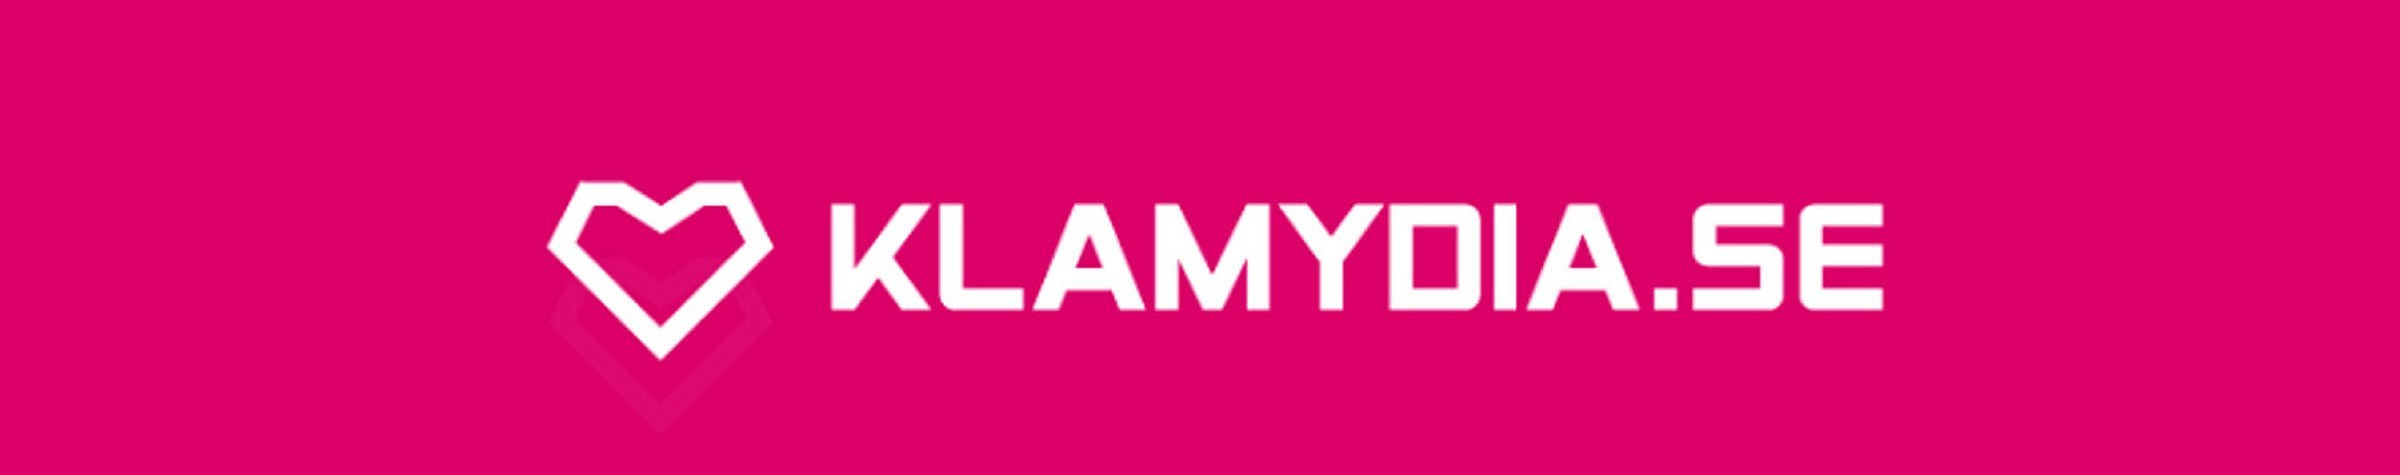 Symbolbild för Klamydia.se, Västra Götaland. Rosa bild med vit text och ett hjärta